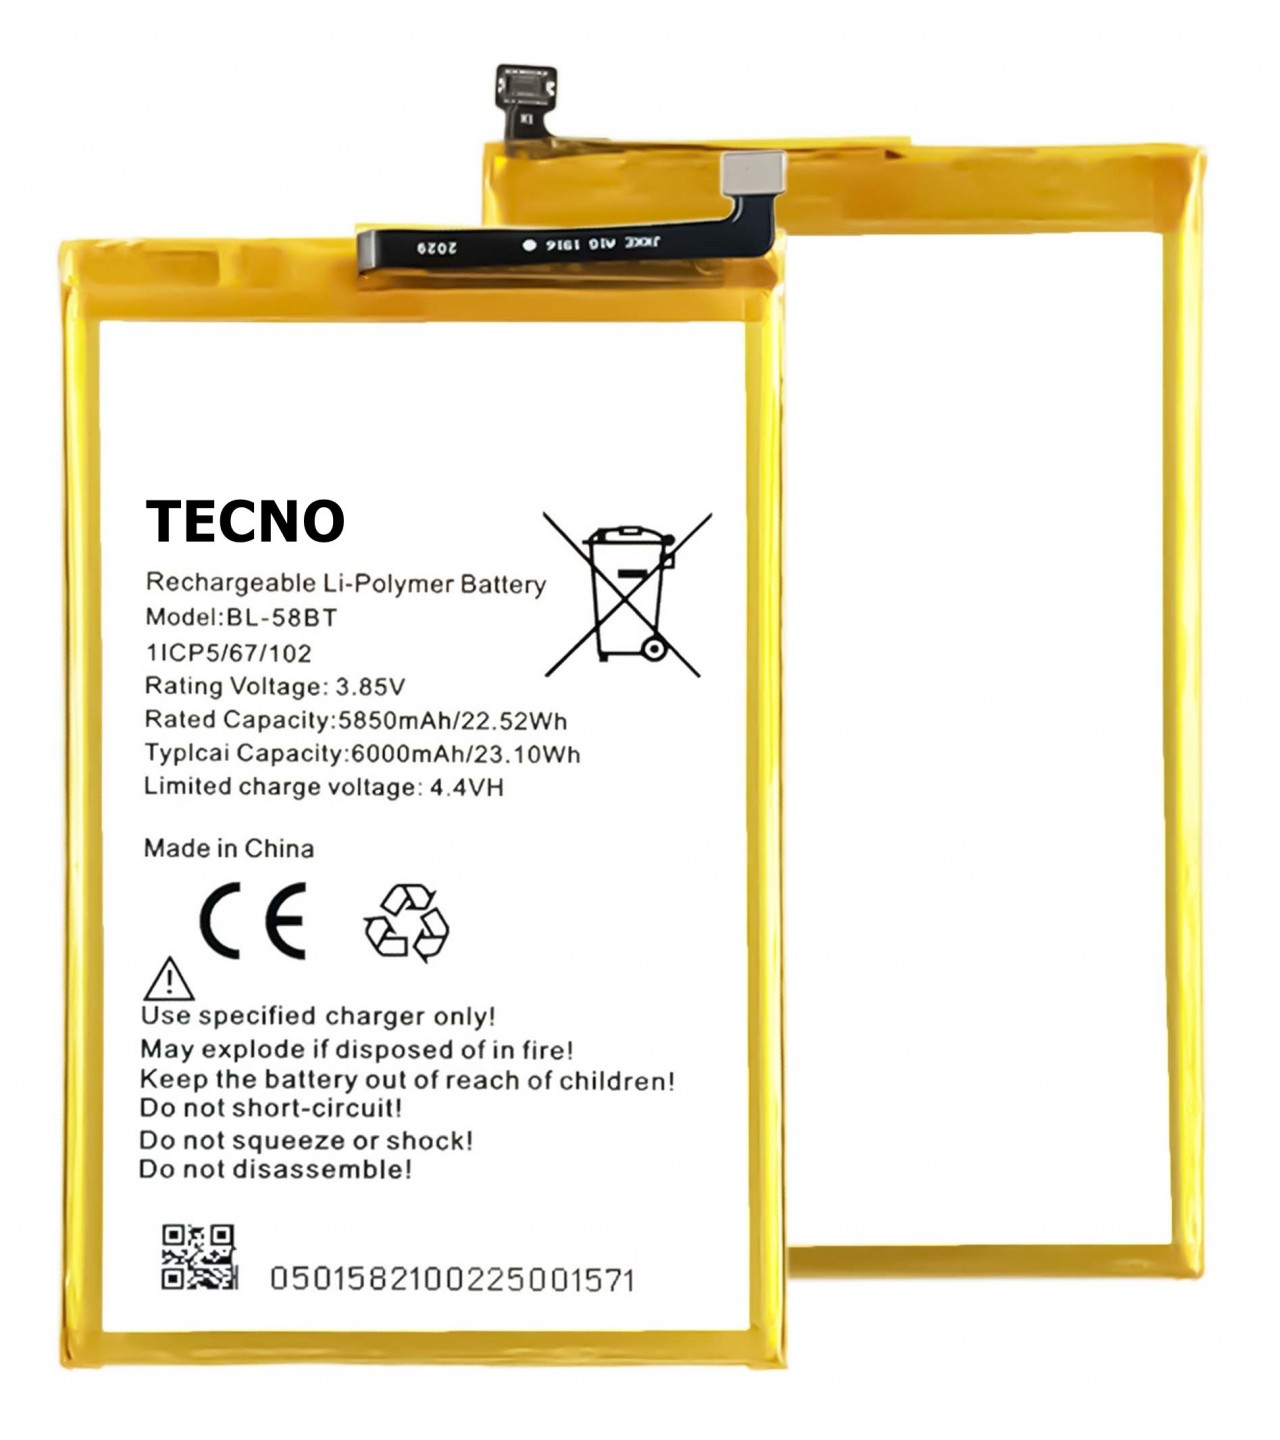 TECNO Pouvoir 4 / Pouvoir 4 Pro Battery BL-58BT Battery with 6000mAh Capacity_Silver